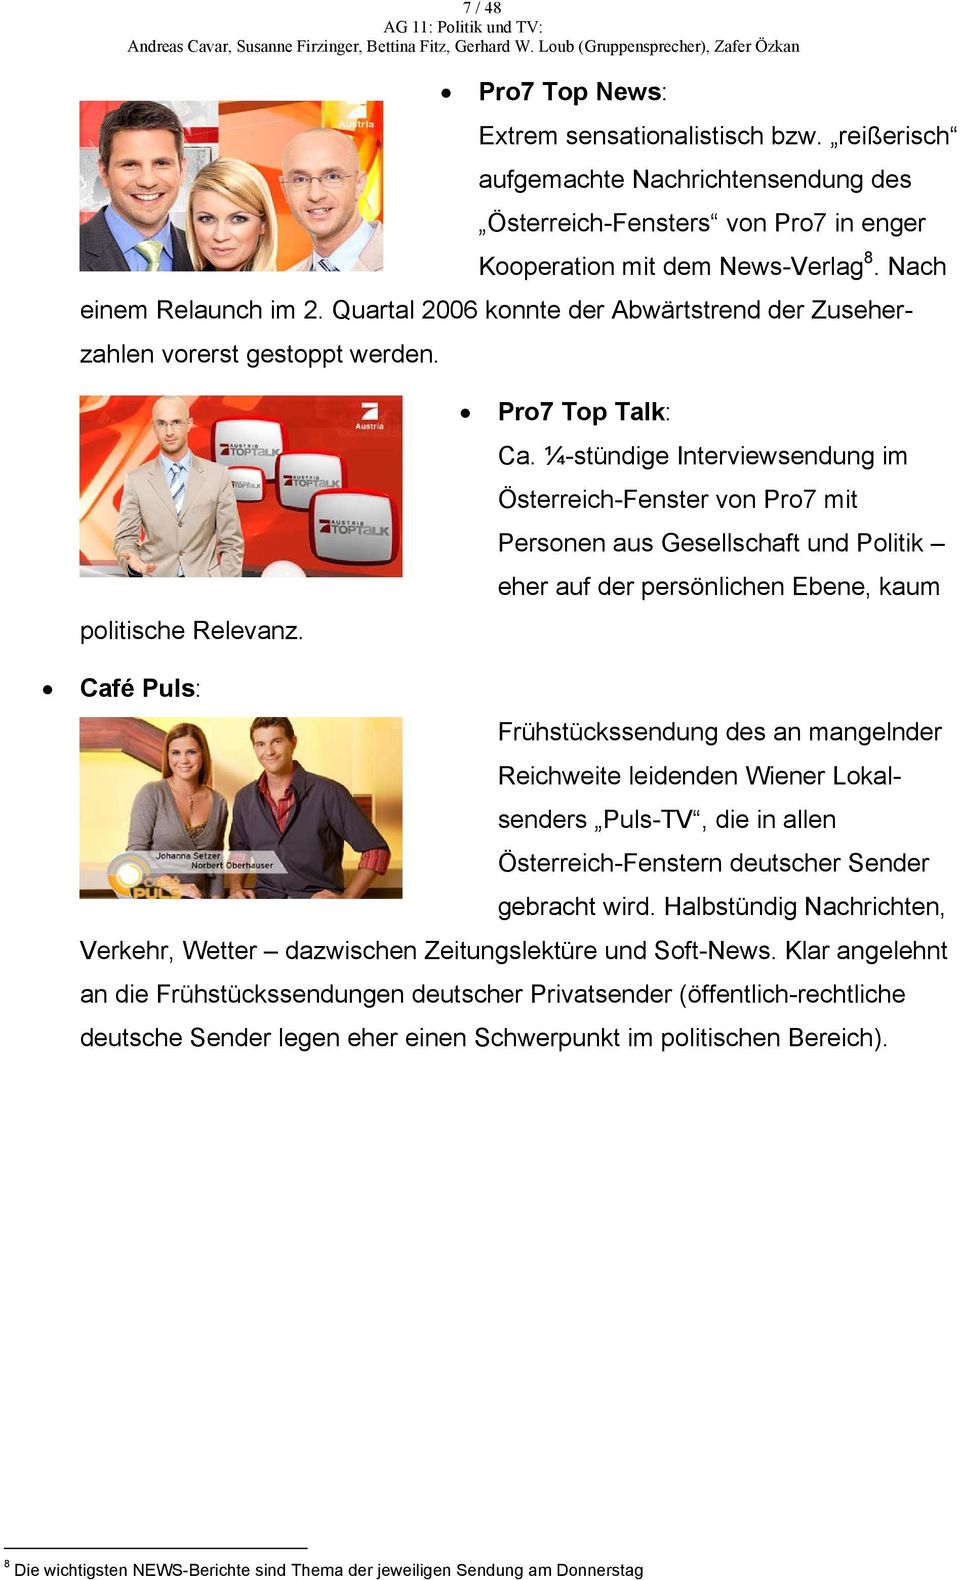 ¼-stündige Interviewsendung im Österreich-Fenster von Pro7 mit Personen aus Gesellschaft und Politik eher auf der persönlichen Ebene, kaum Café Puls: Frühstückssendung des an mangelnder Reichweite